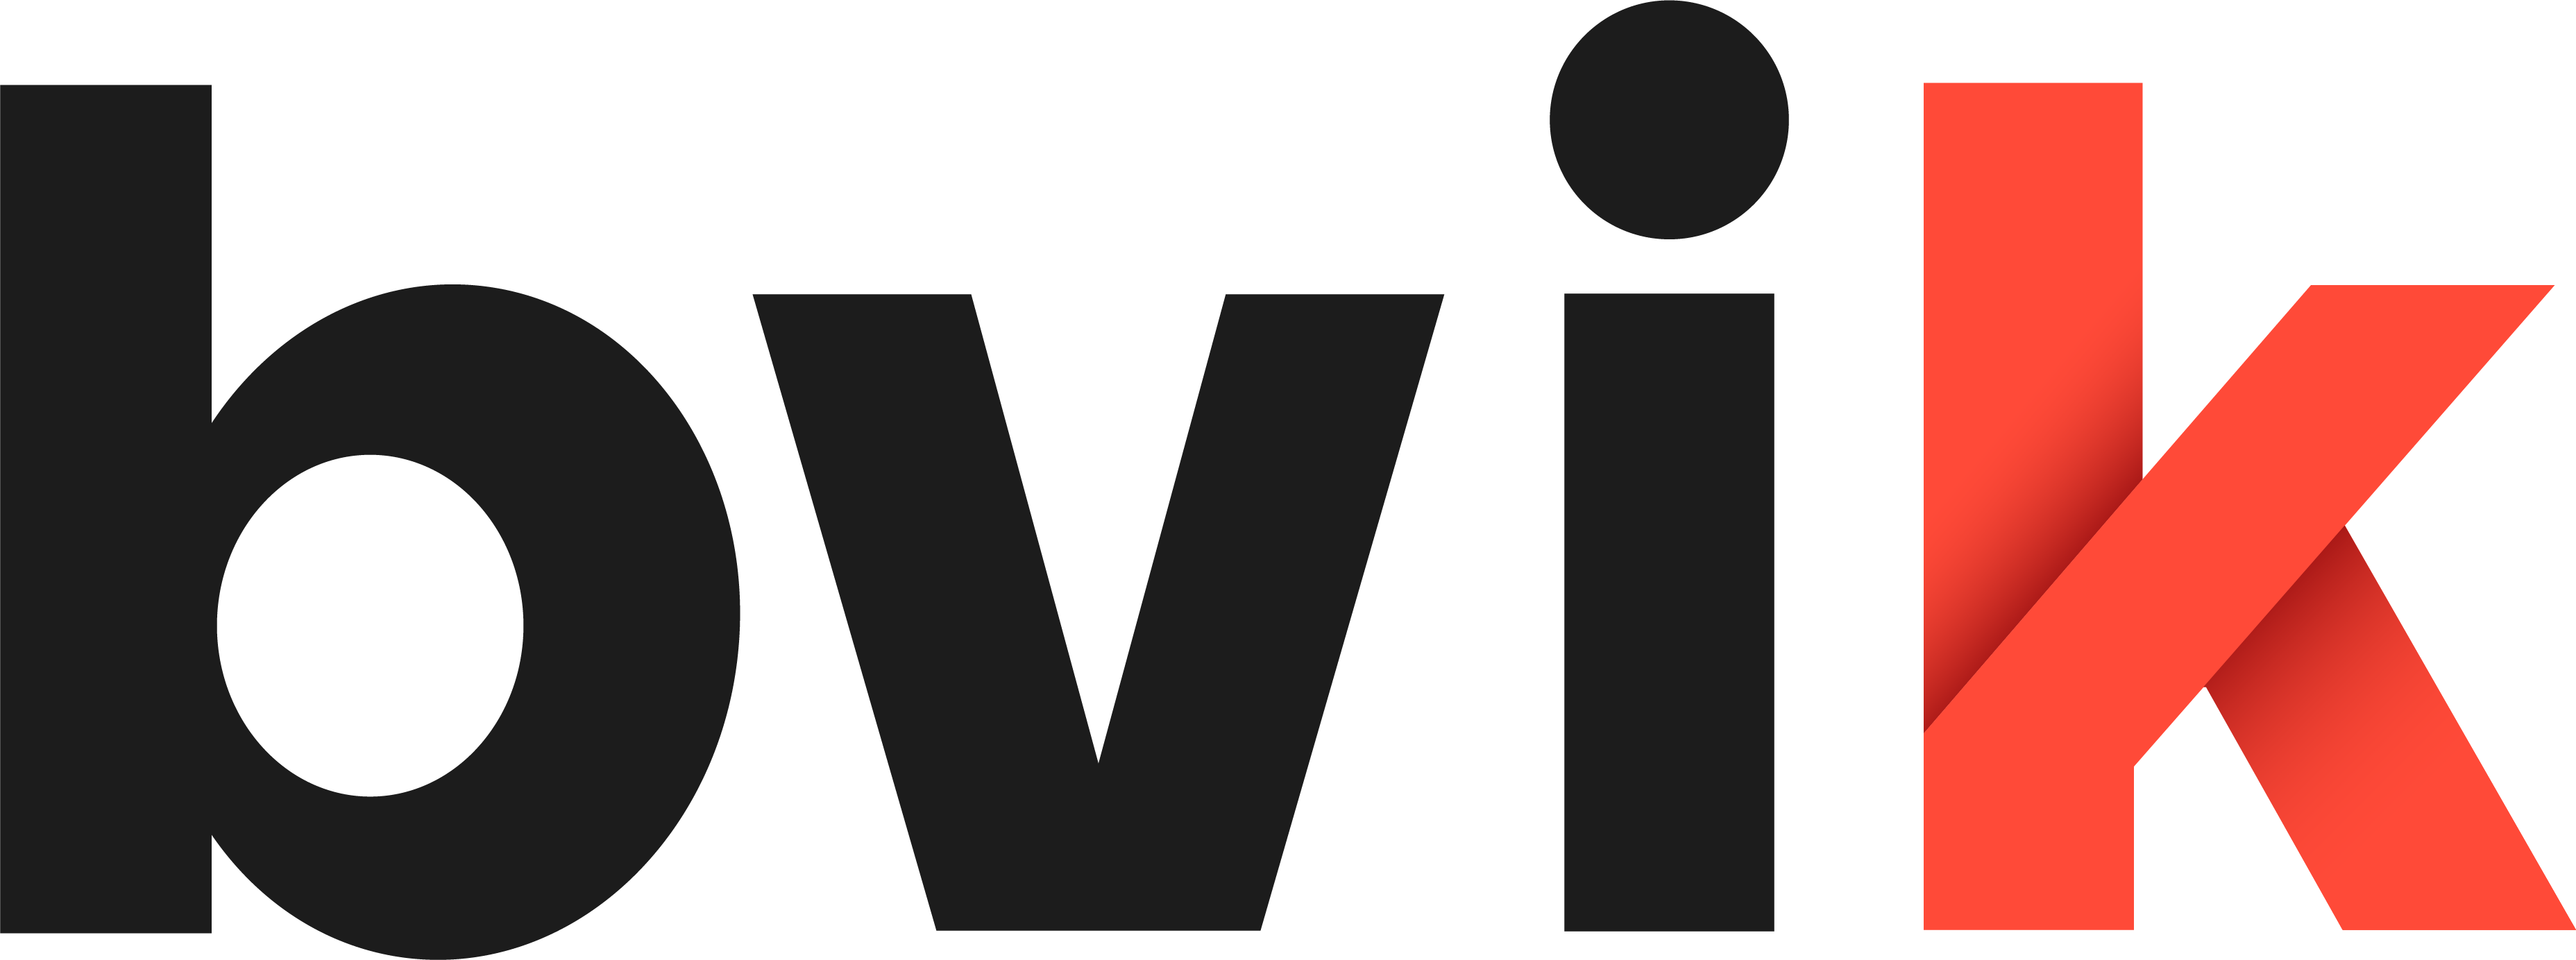 Bundesverband Industrie Kommunikation e.V Logo